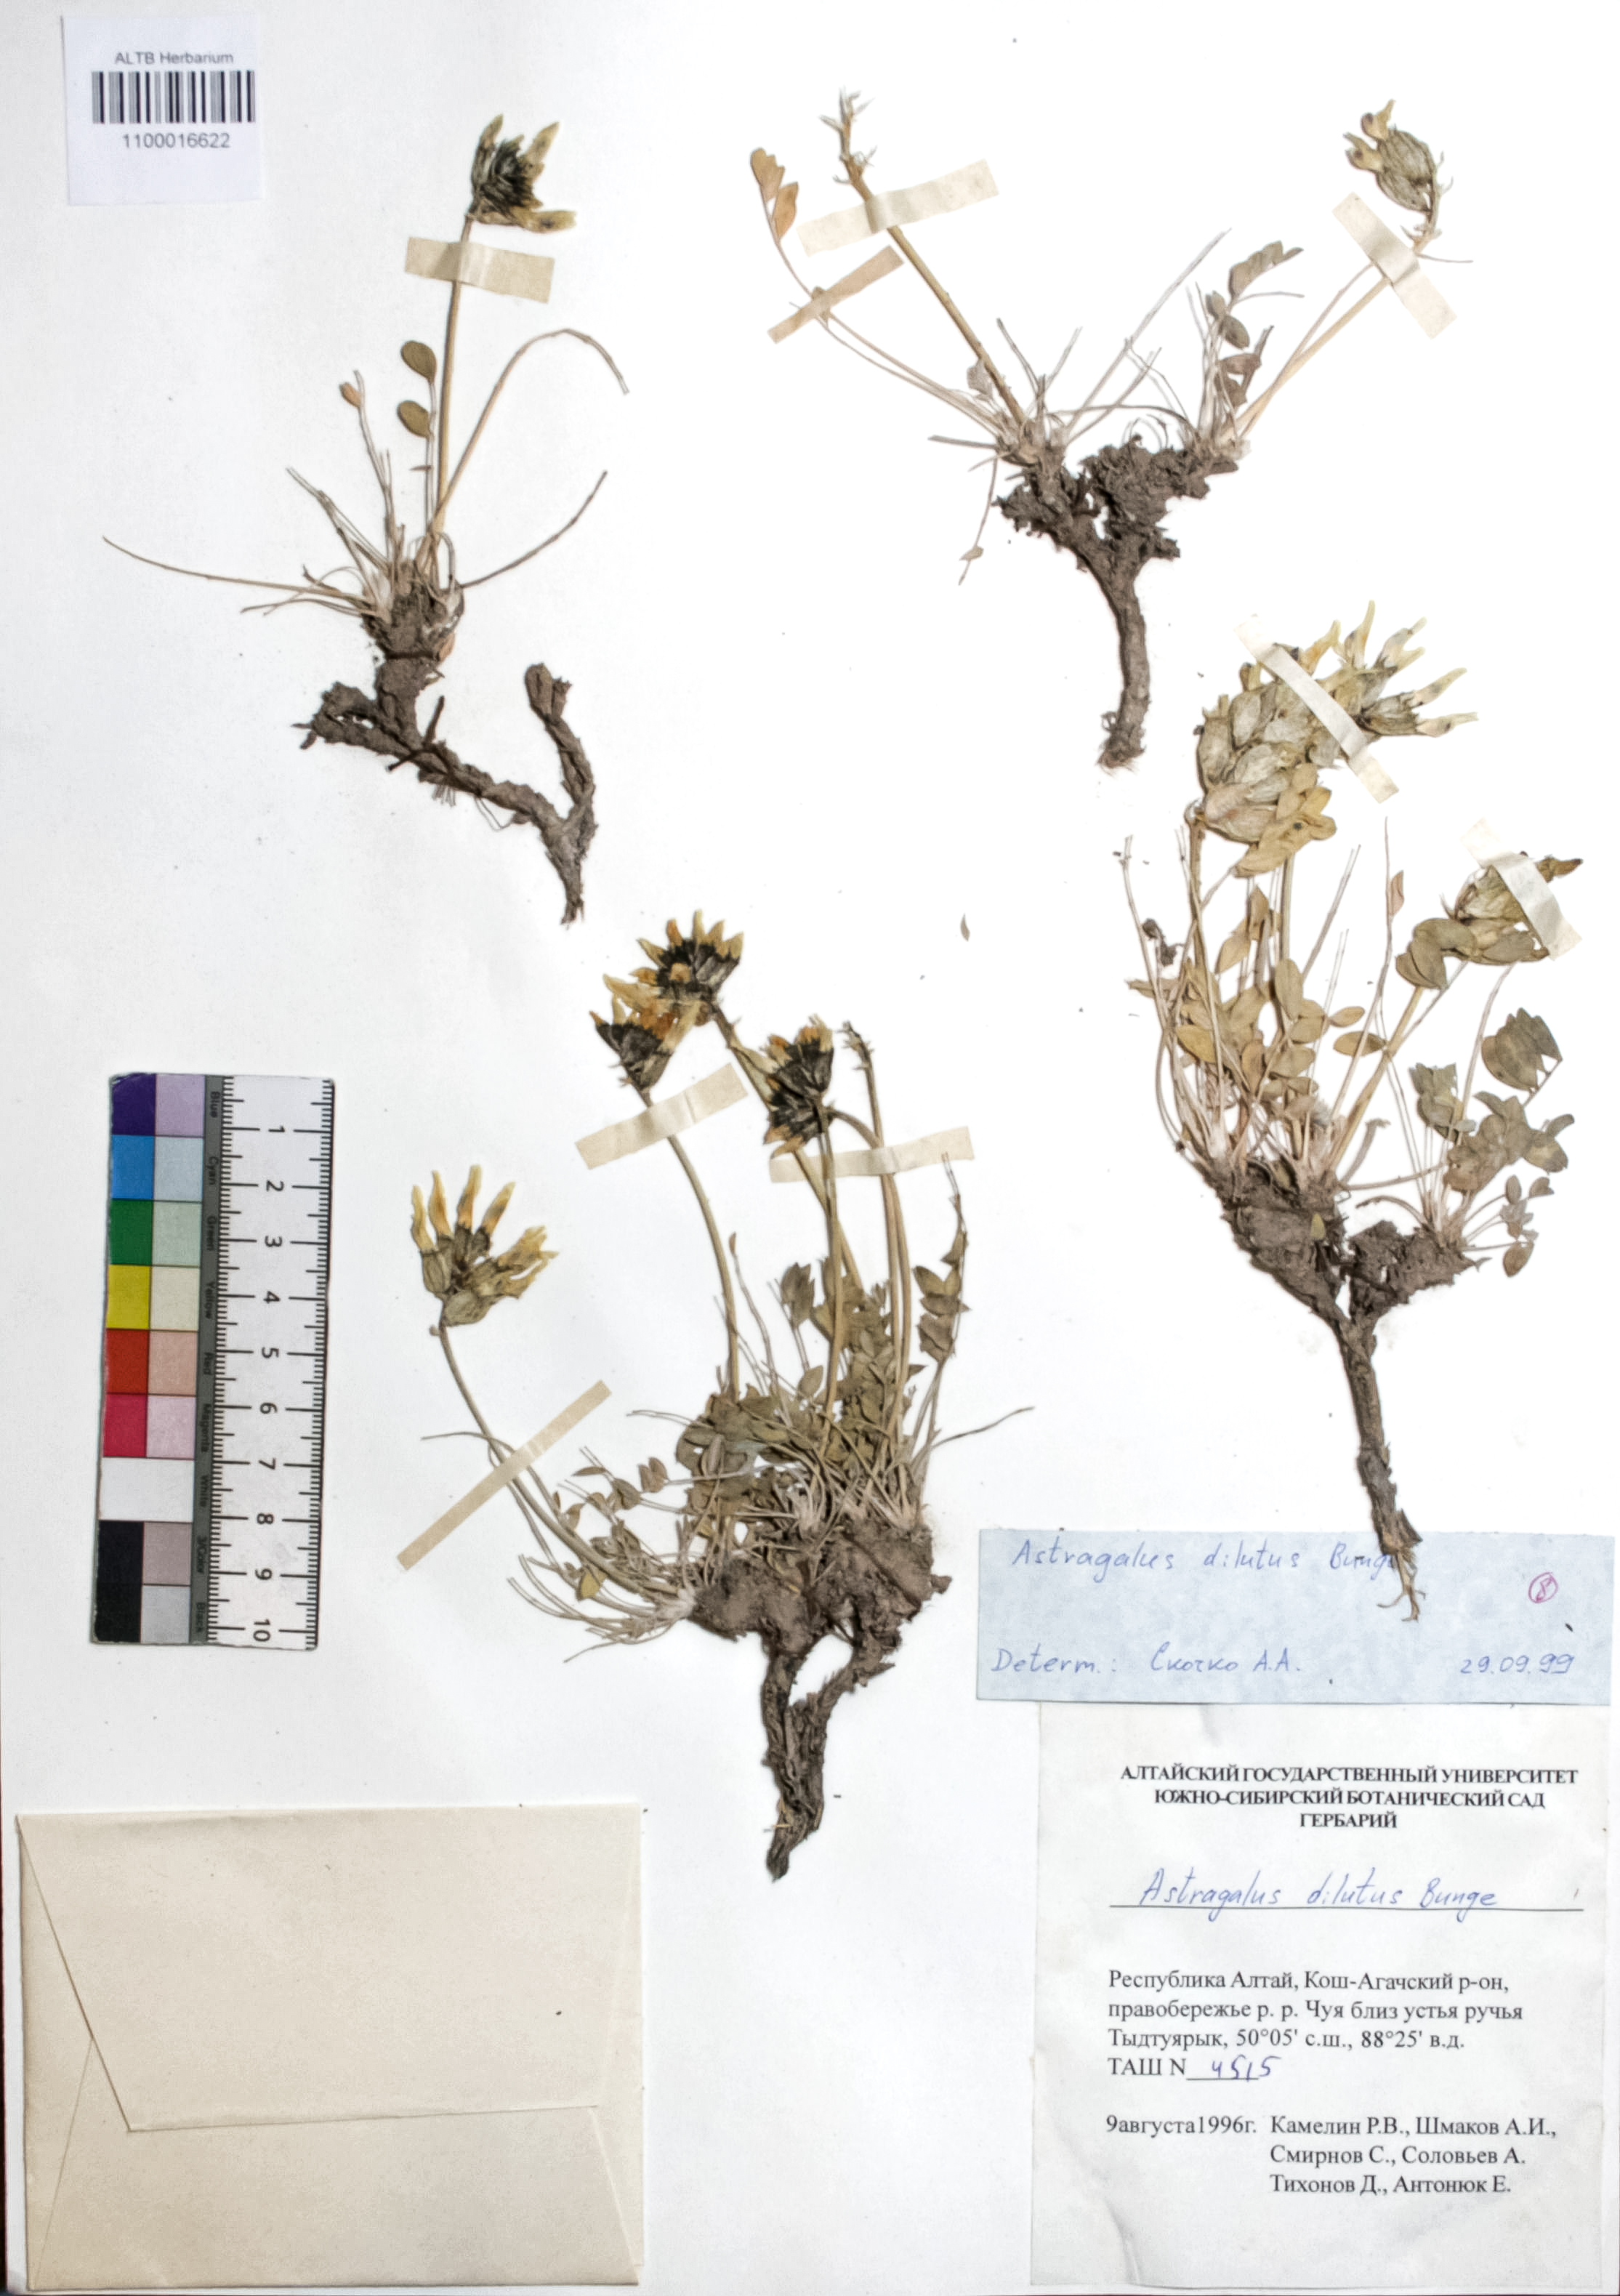 Astragalus dilutus Bunge